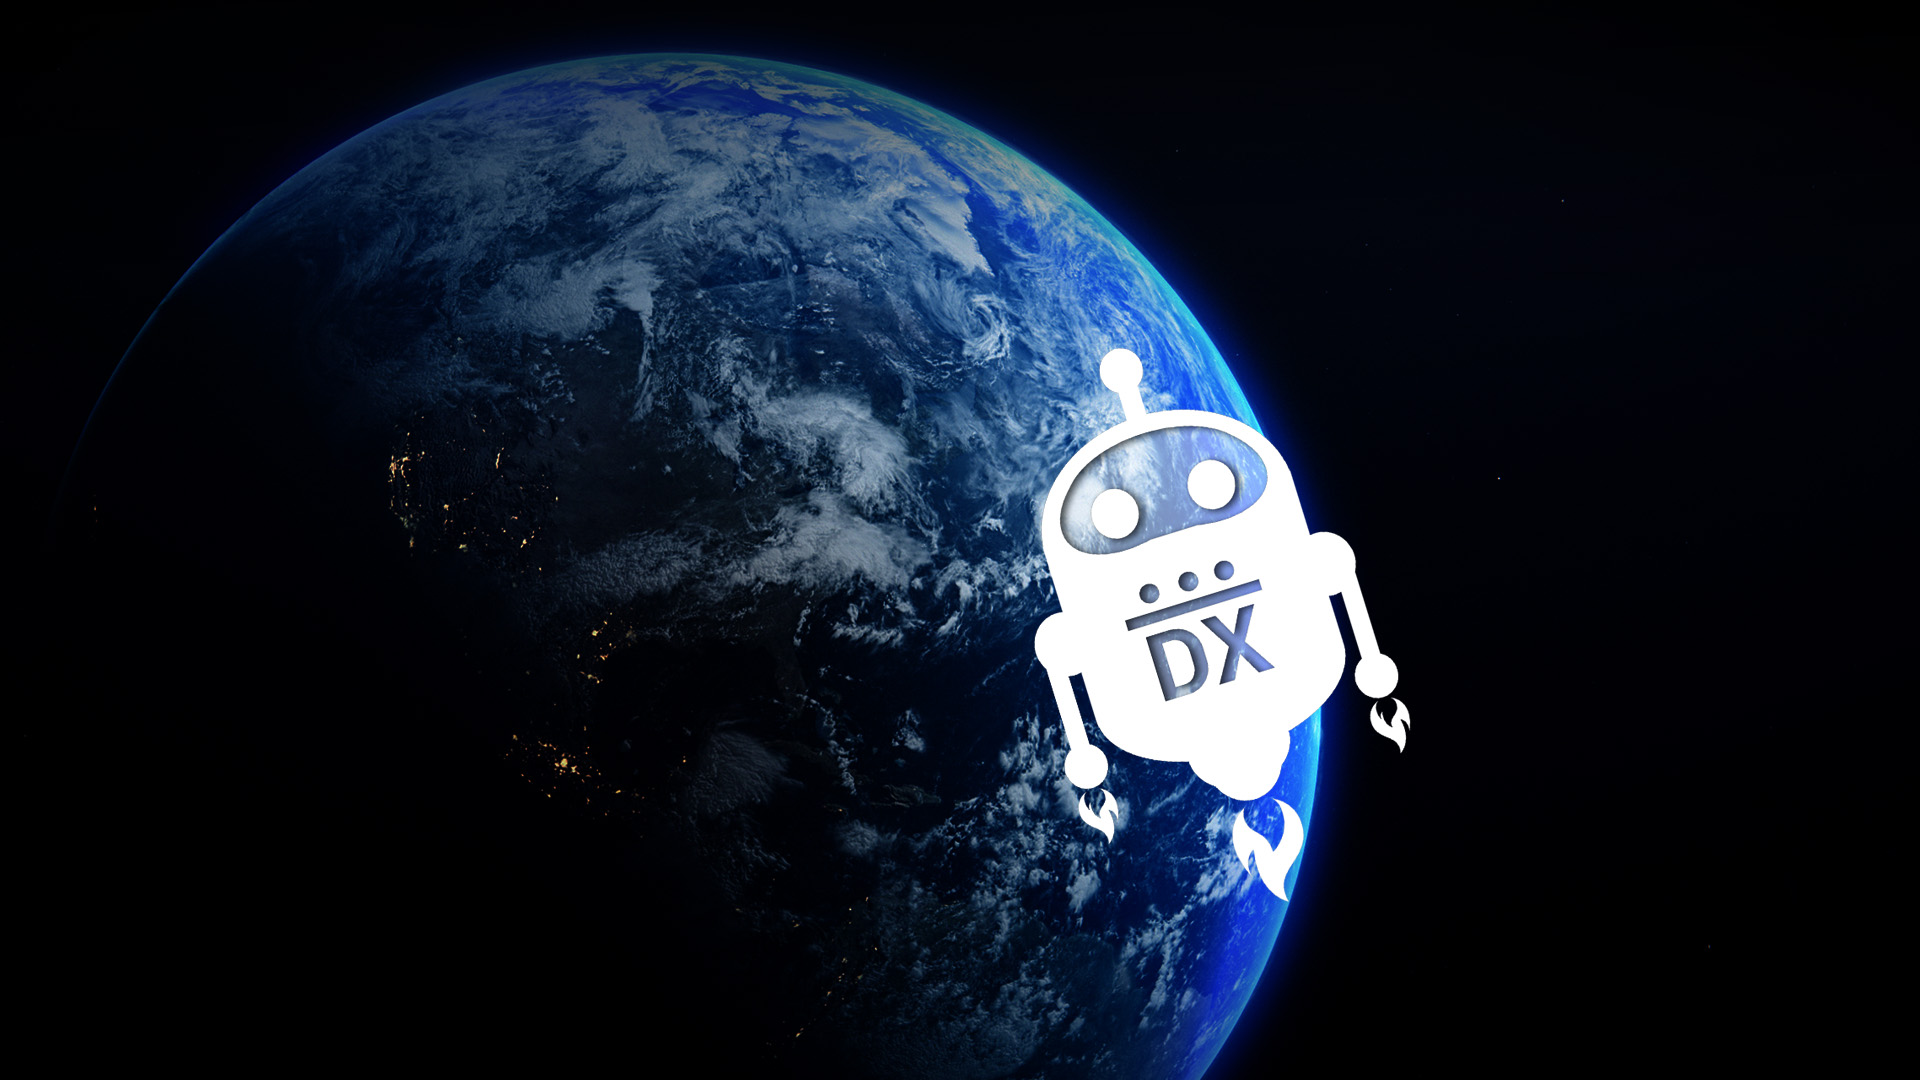 flex-dx-main-earth-robo